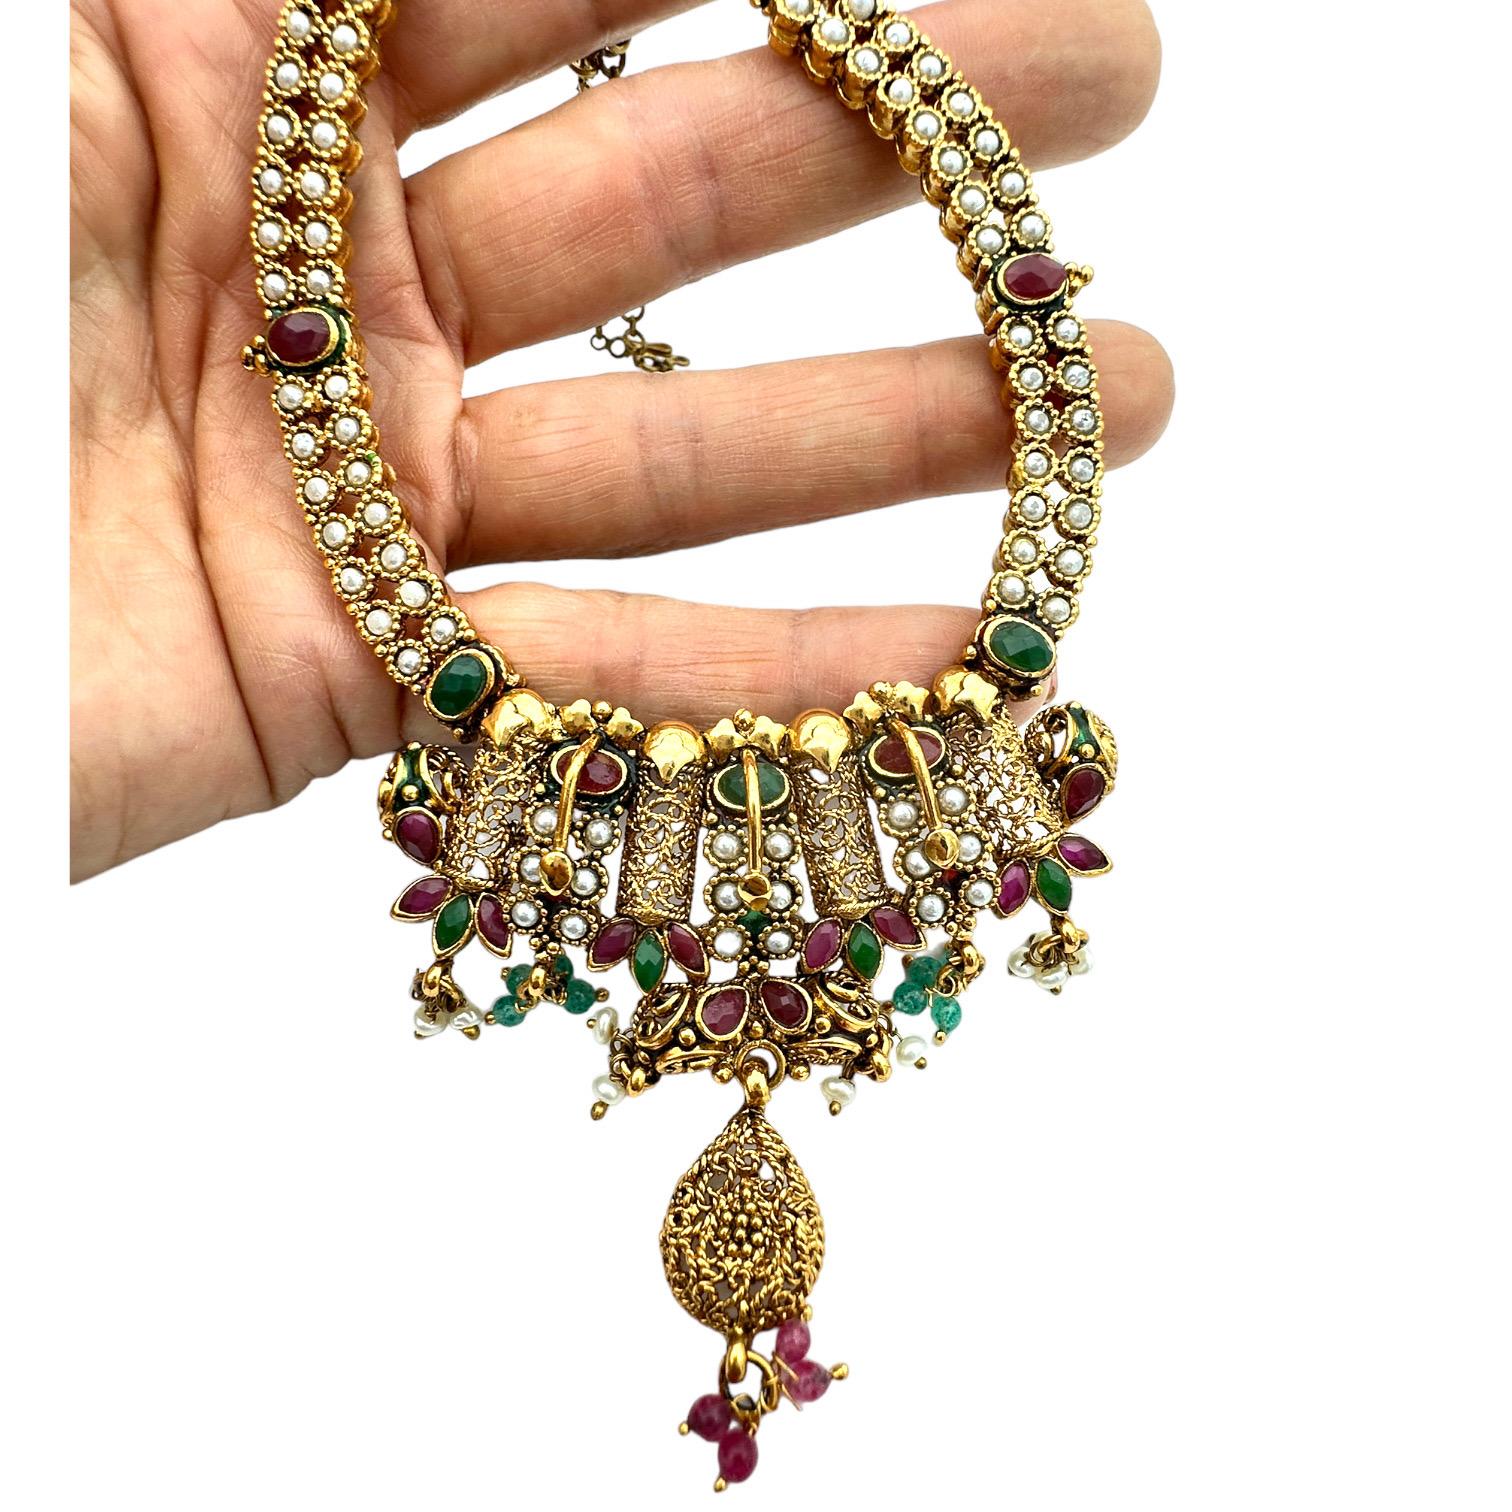  Verleihen Sie Ihrem Look einen Hauch von Luxus mit der Cleopatra-Halskette. Dieses verschnörkelte Halsband zeichnet sich durch ein exquisites, handgefertigtes Design aus, das durch die Verwendung von Farbe zu einem wahrhaft einzigartigen Stück